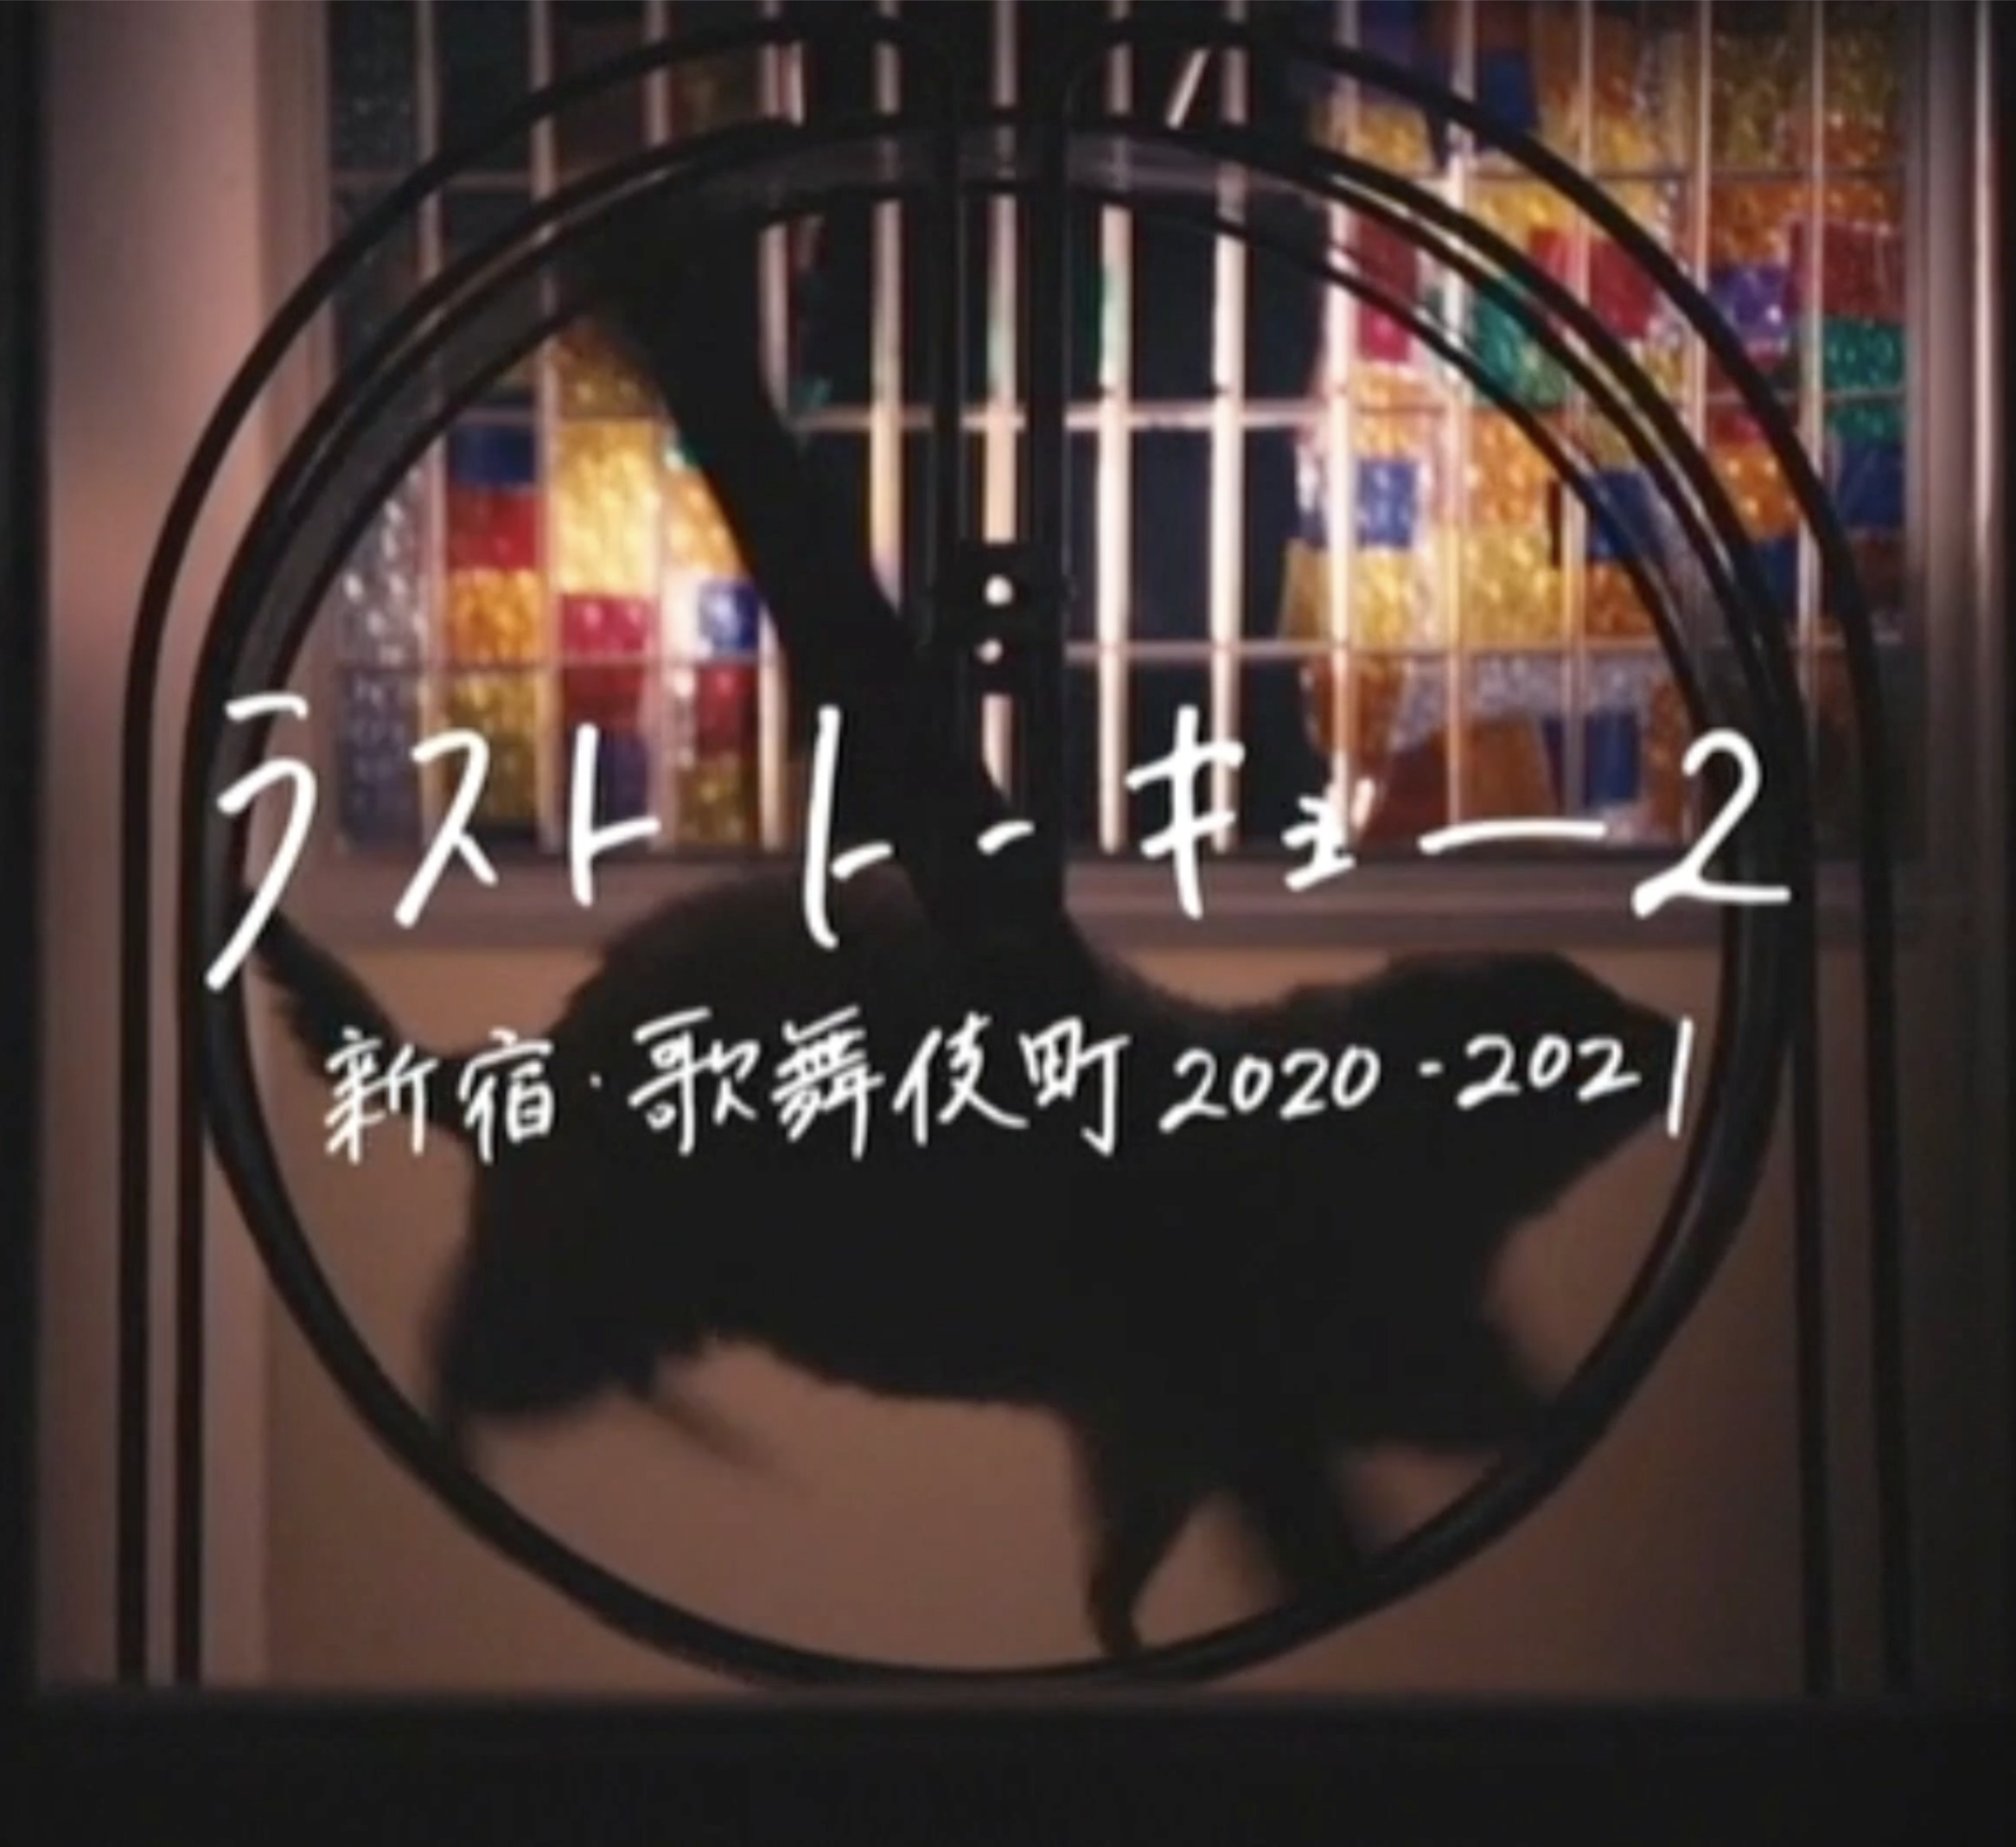 2021.01.30 NHK『ラストトーキョー2 新宿・歌舞伎町 2020-2021』に【SASUKE】,【HAO】出演